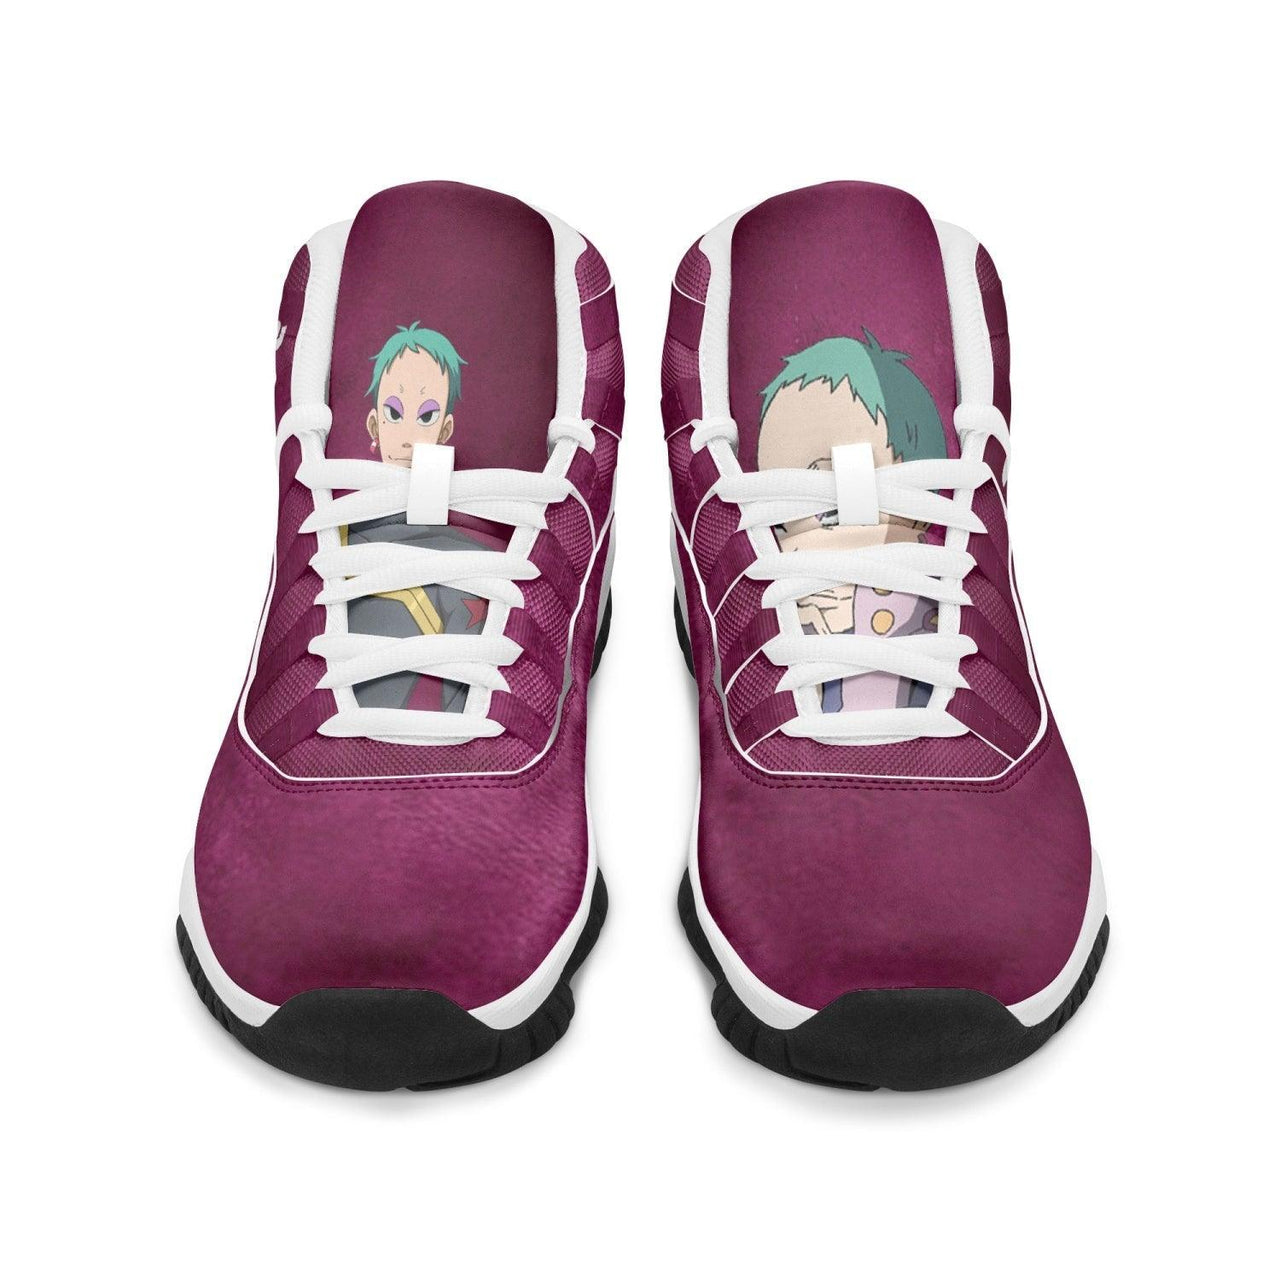 Tengen Toppa Gurren Lagann Leeron JD11 Anime Shoes _ Tengen Toppa Gurren Lagann _ Ayuko